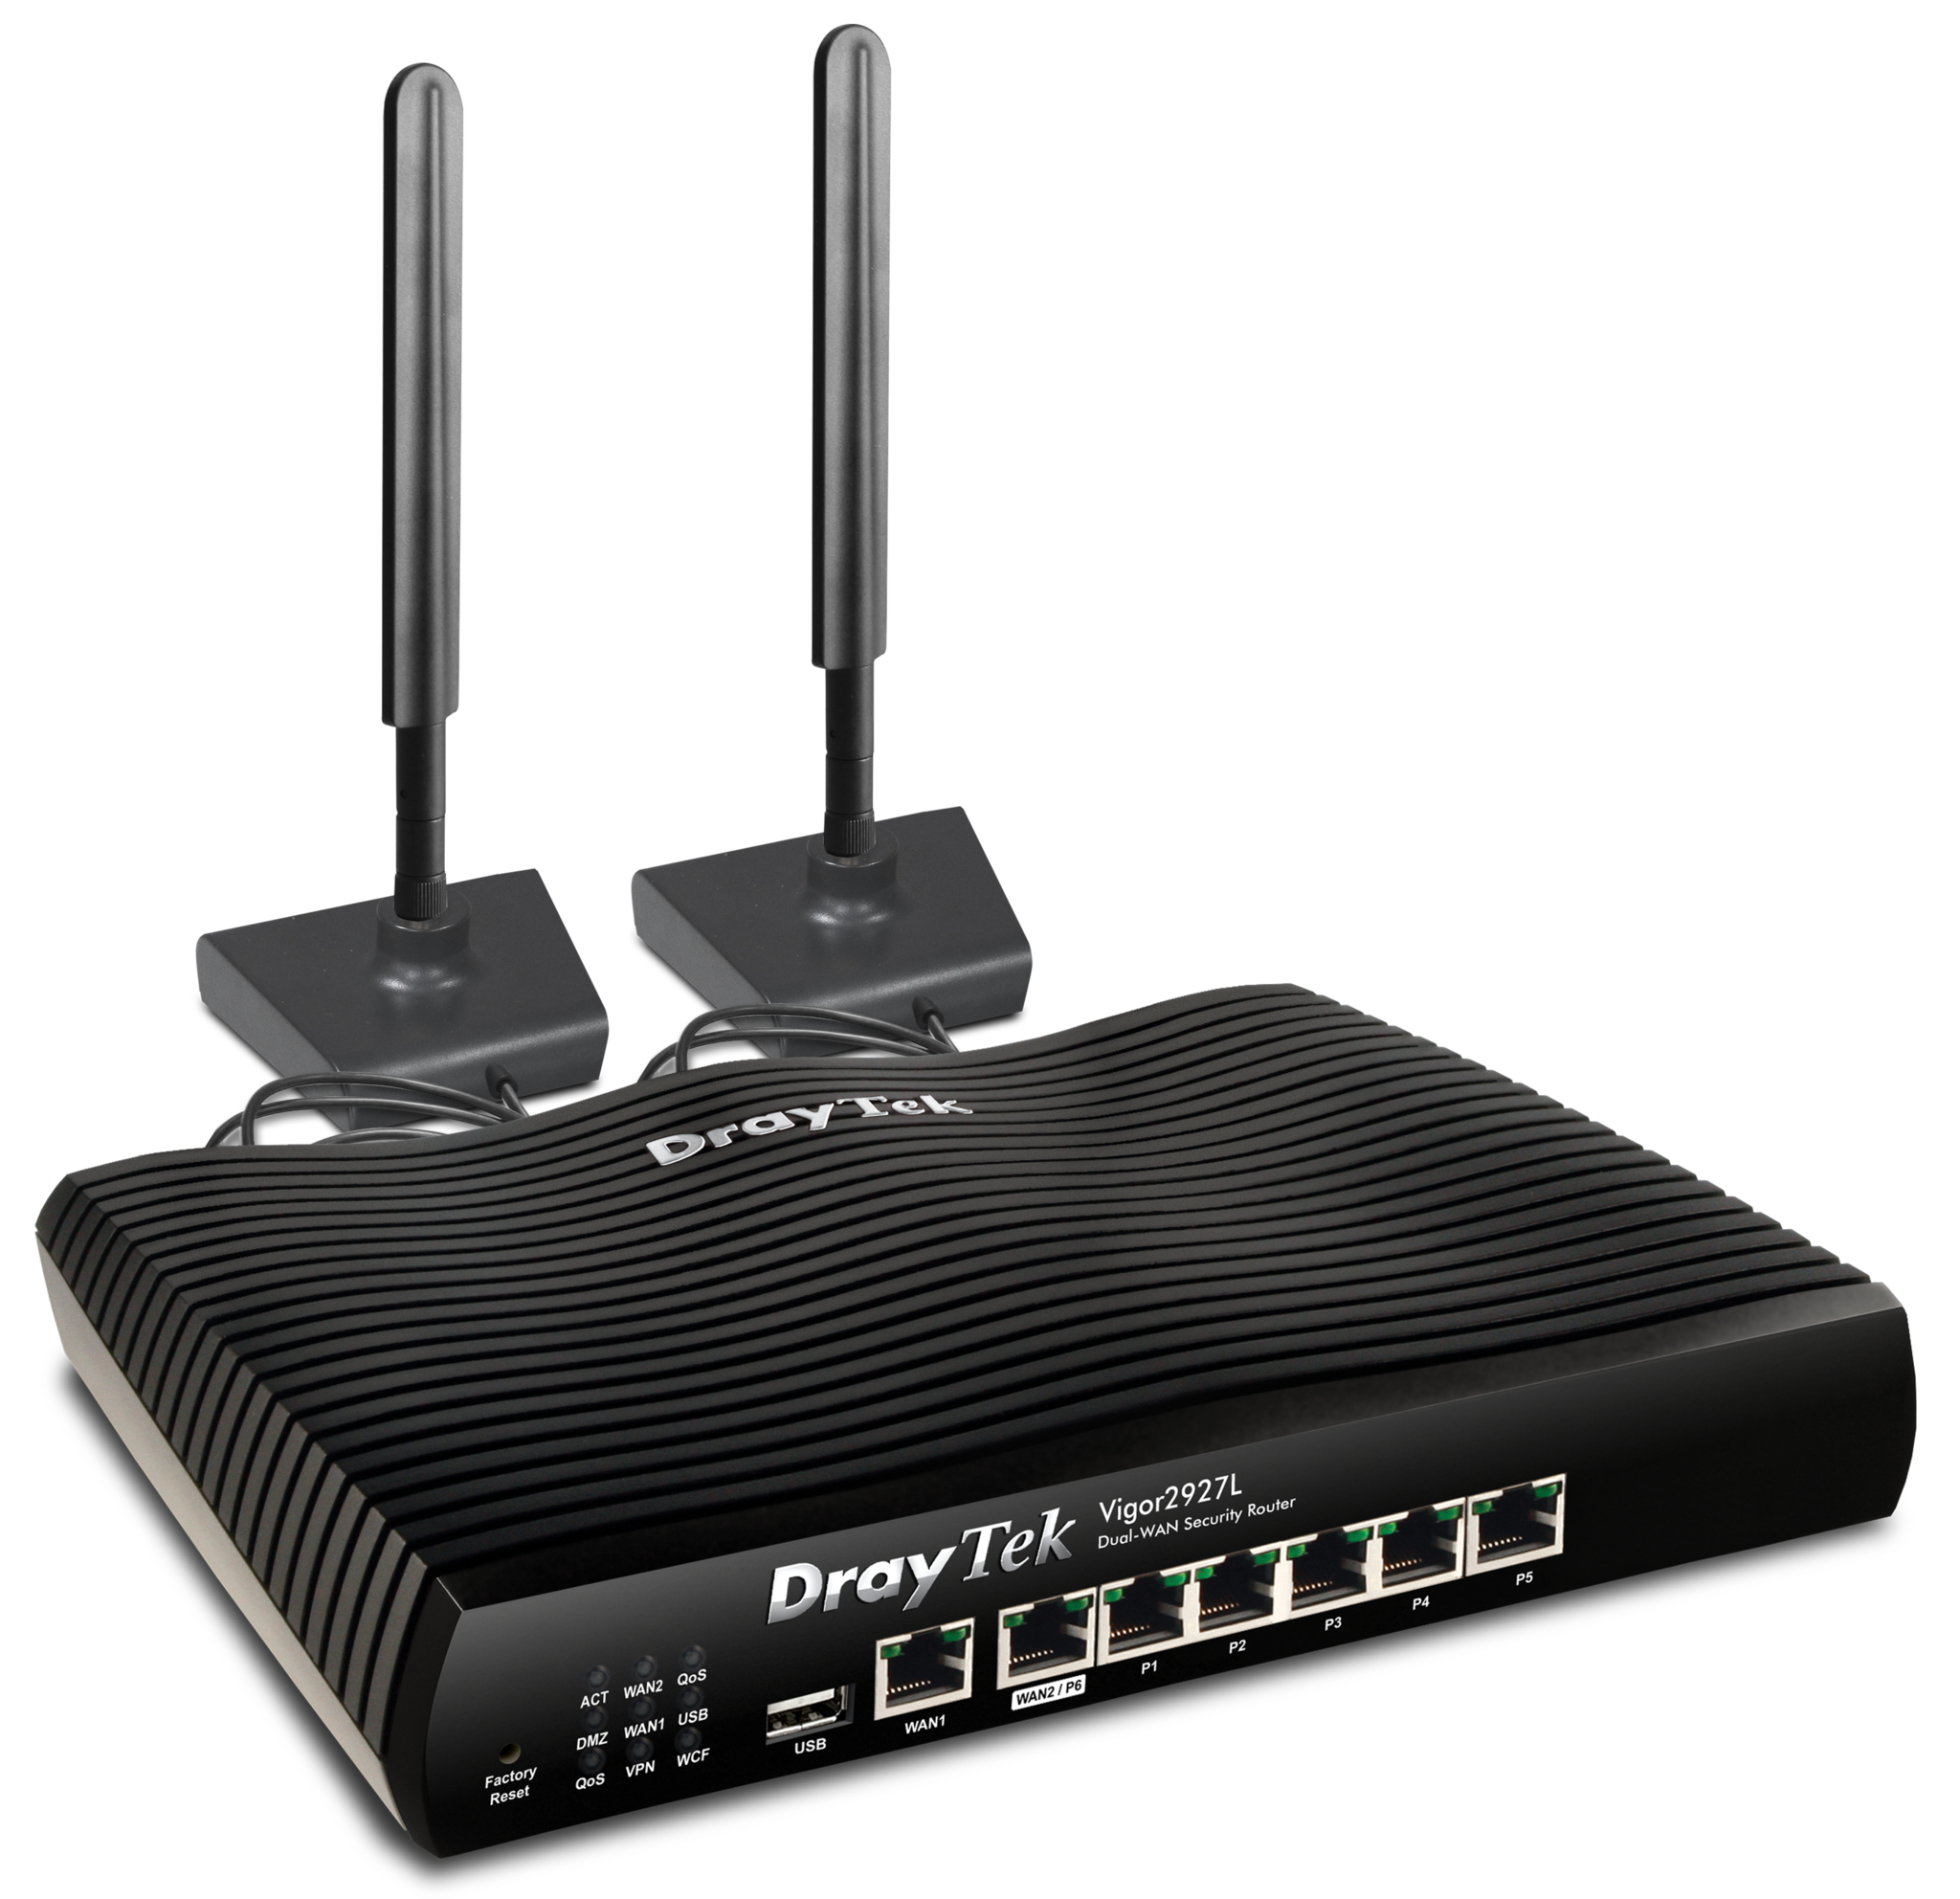 Anemoon vis visueel Voorwaarden Draytek Vigor 2927L LTE (4G) modem met SIM card slot en dual Gigabit WAN  breedband router - TelecomShop.nl